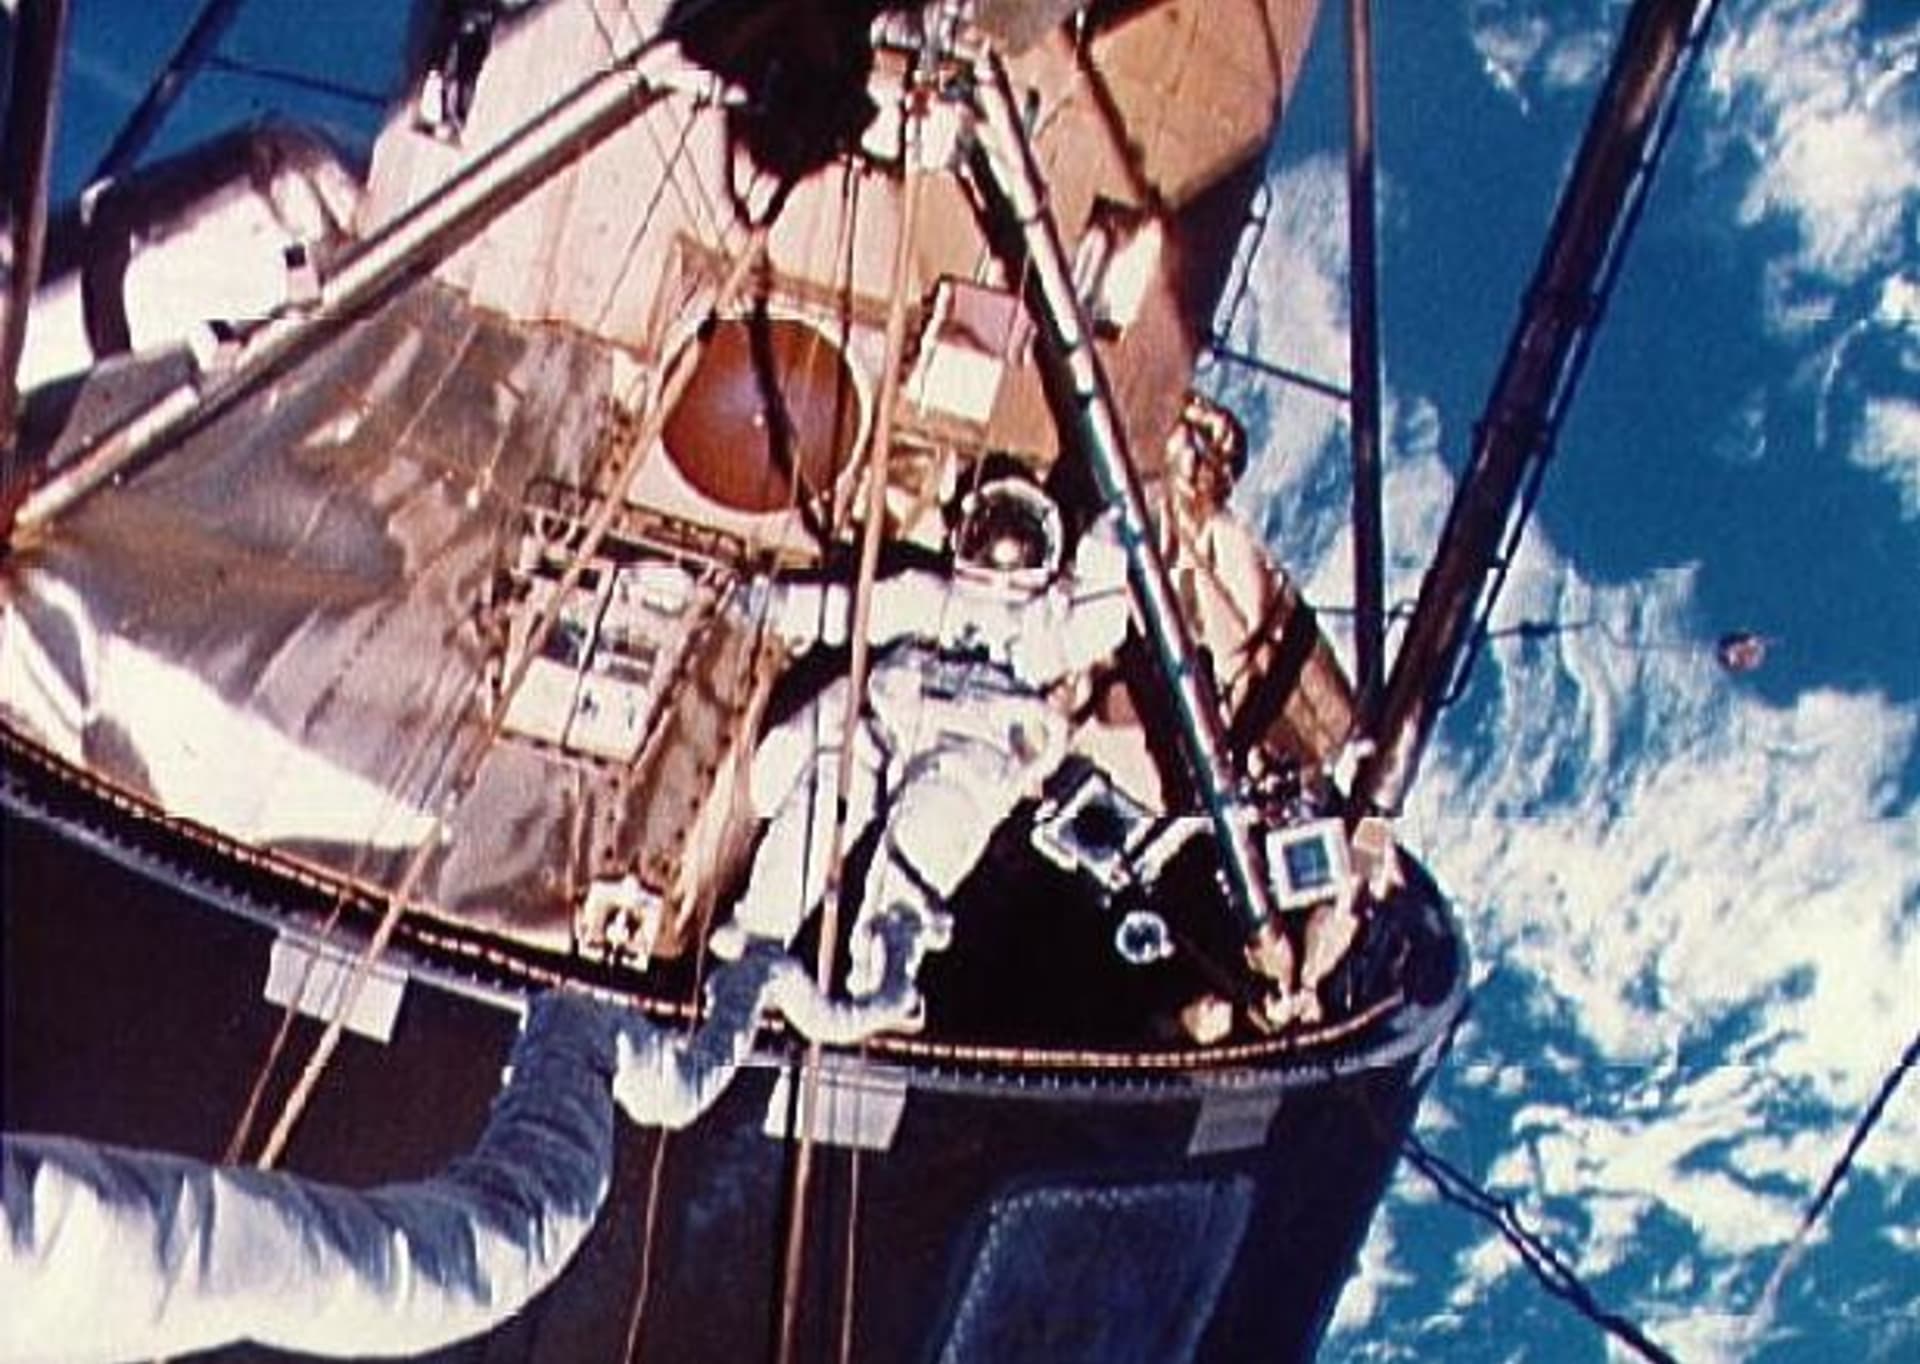 Skylab 4